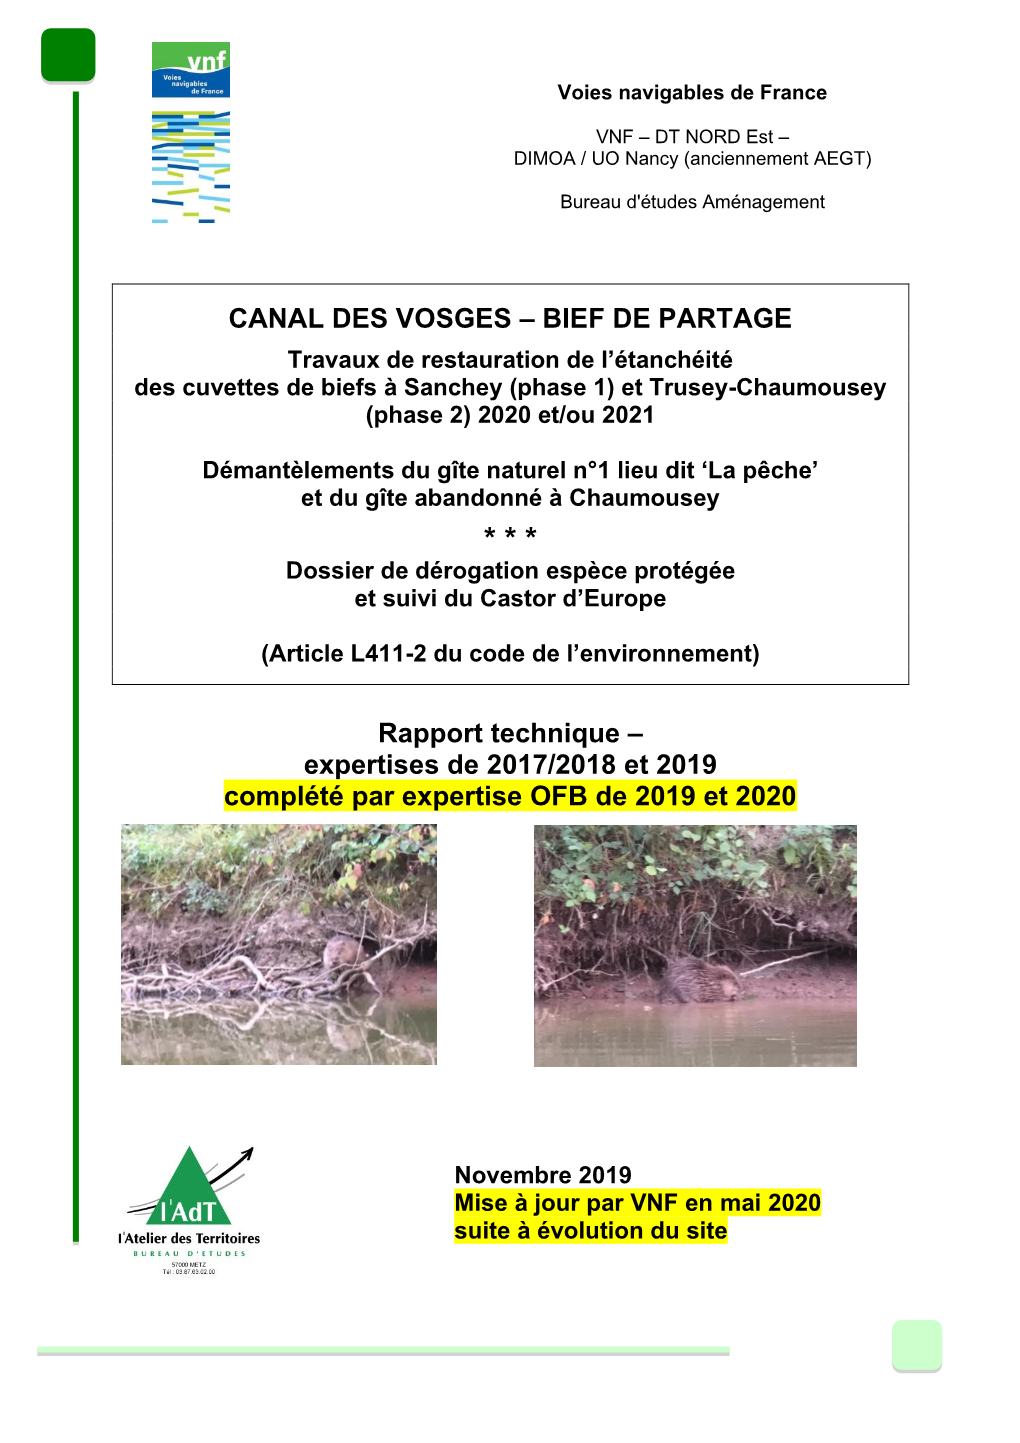 Canal Des Vosges – Bief De Partage